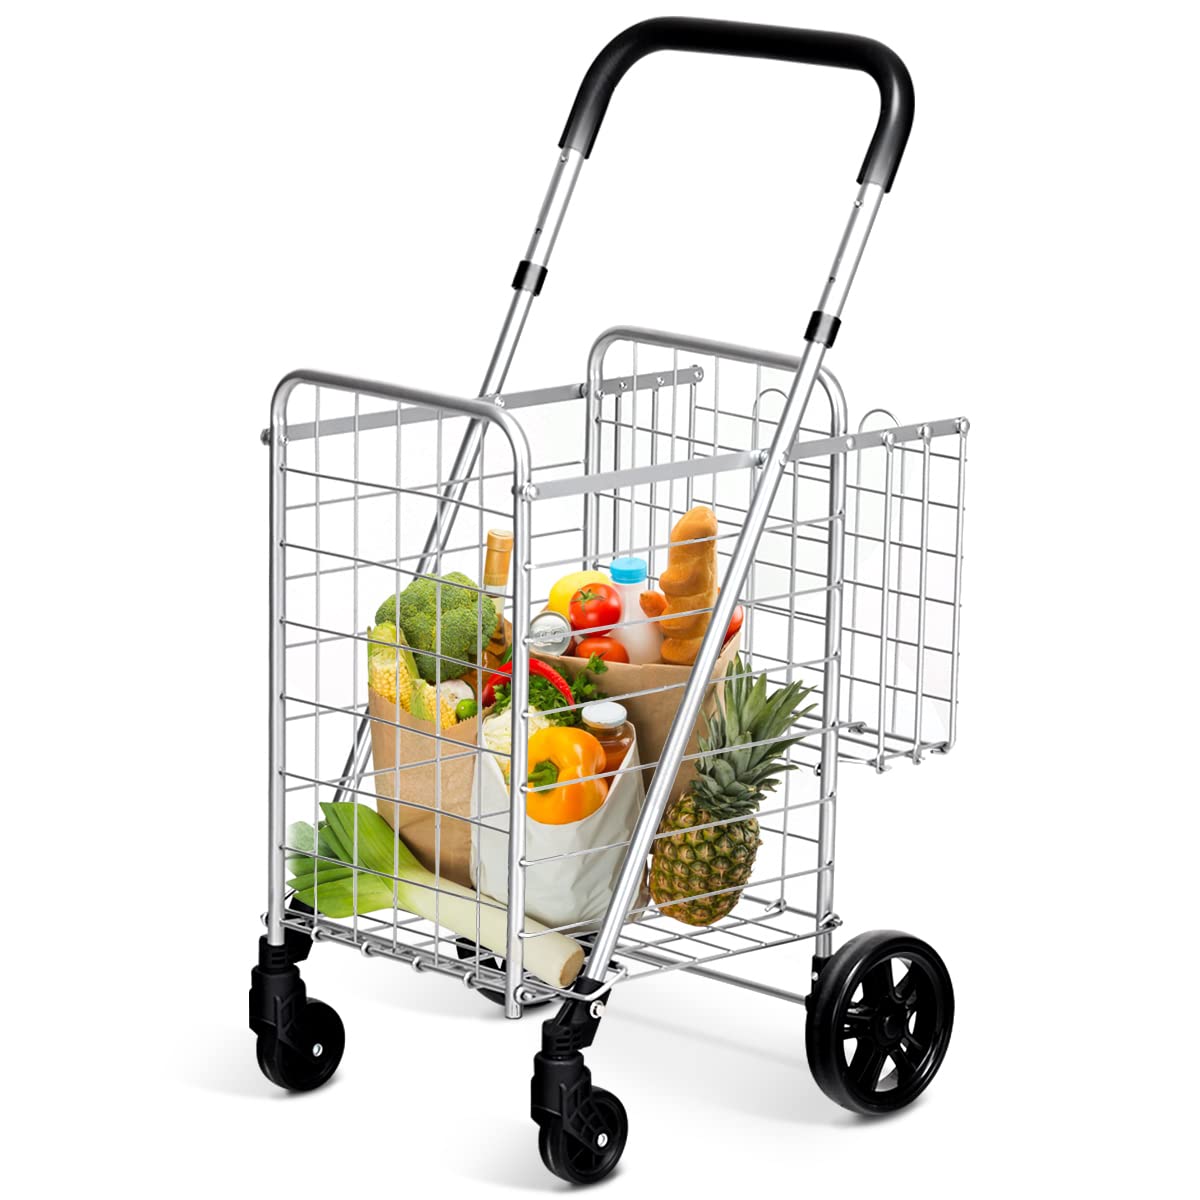 Giantex Folding Shopping Cart, 52D x 43W x 89.5H